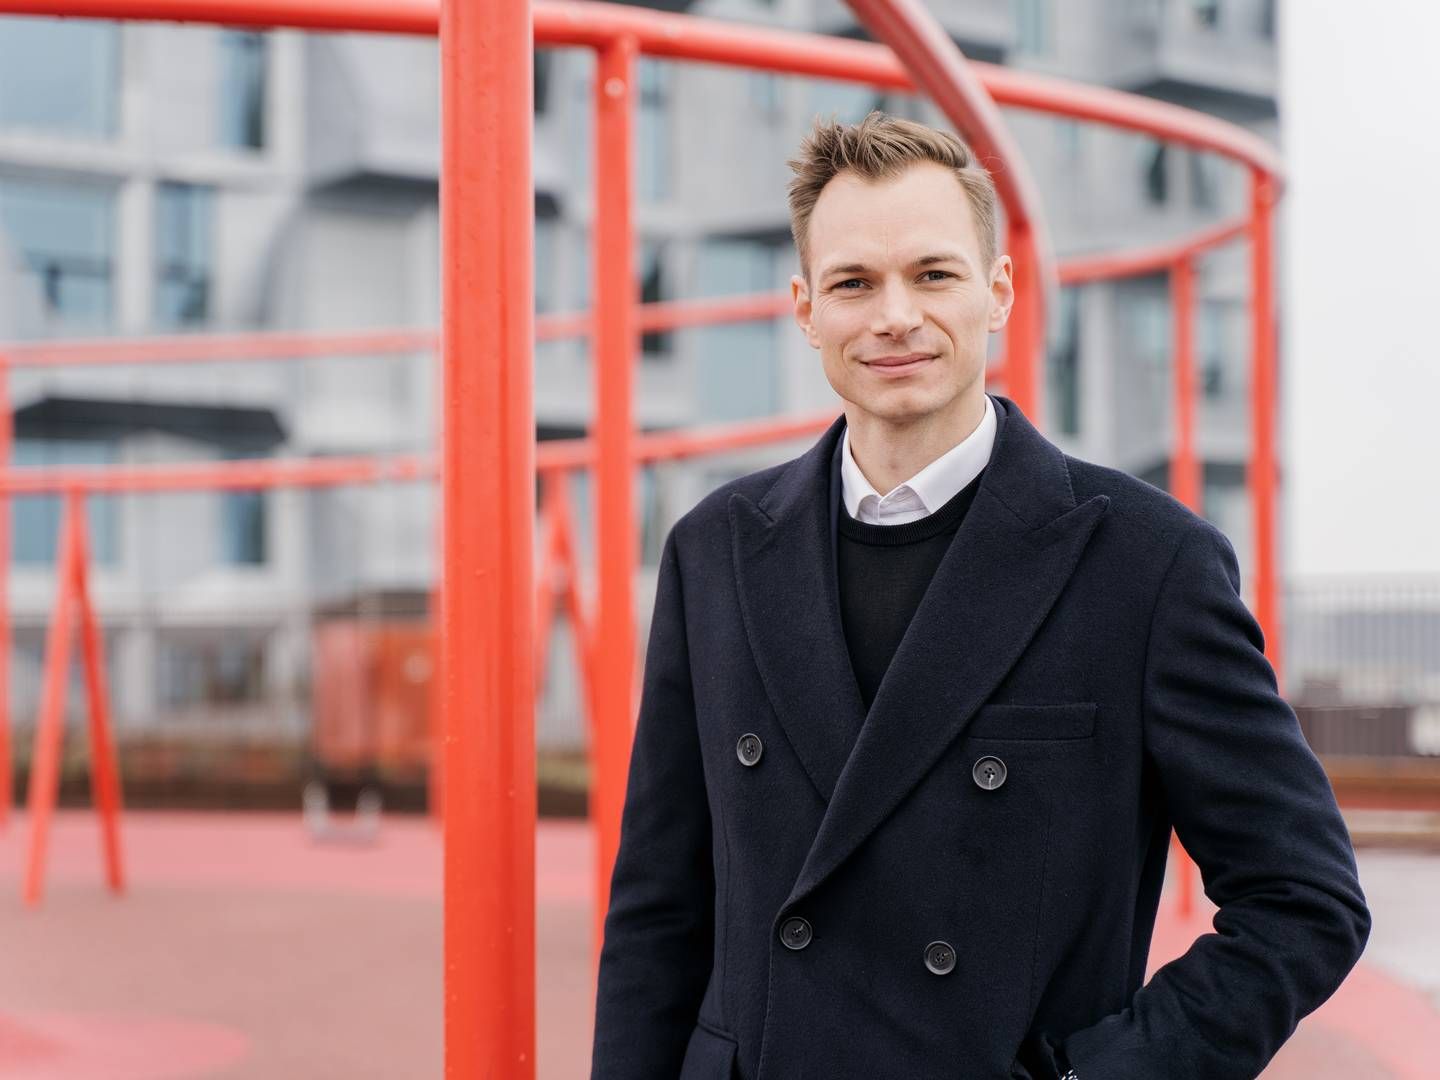 Fra maj i år skifter Sune Ingemann fra Nrep til koncernledelsen hos Tetriis som ny driftsdirektør. | Foto: PR / Nrep